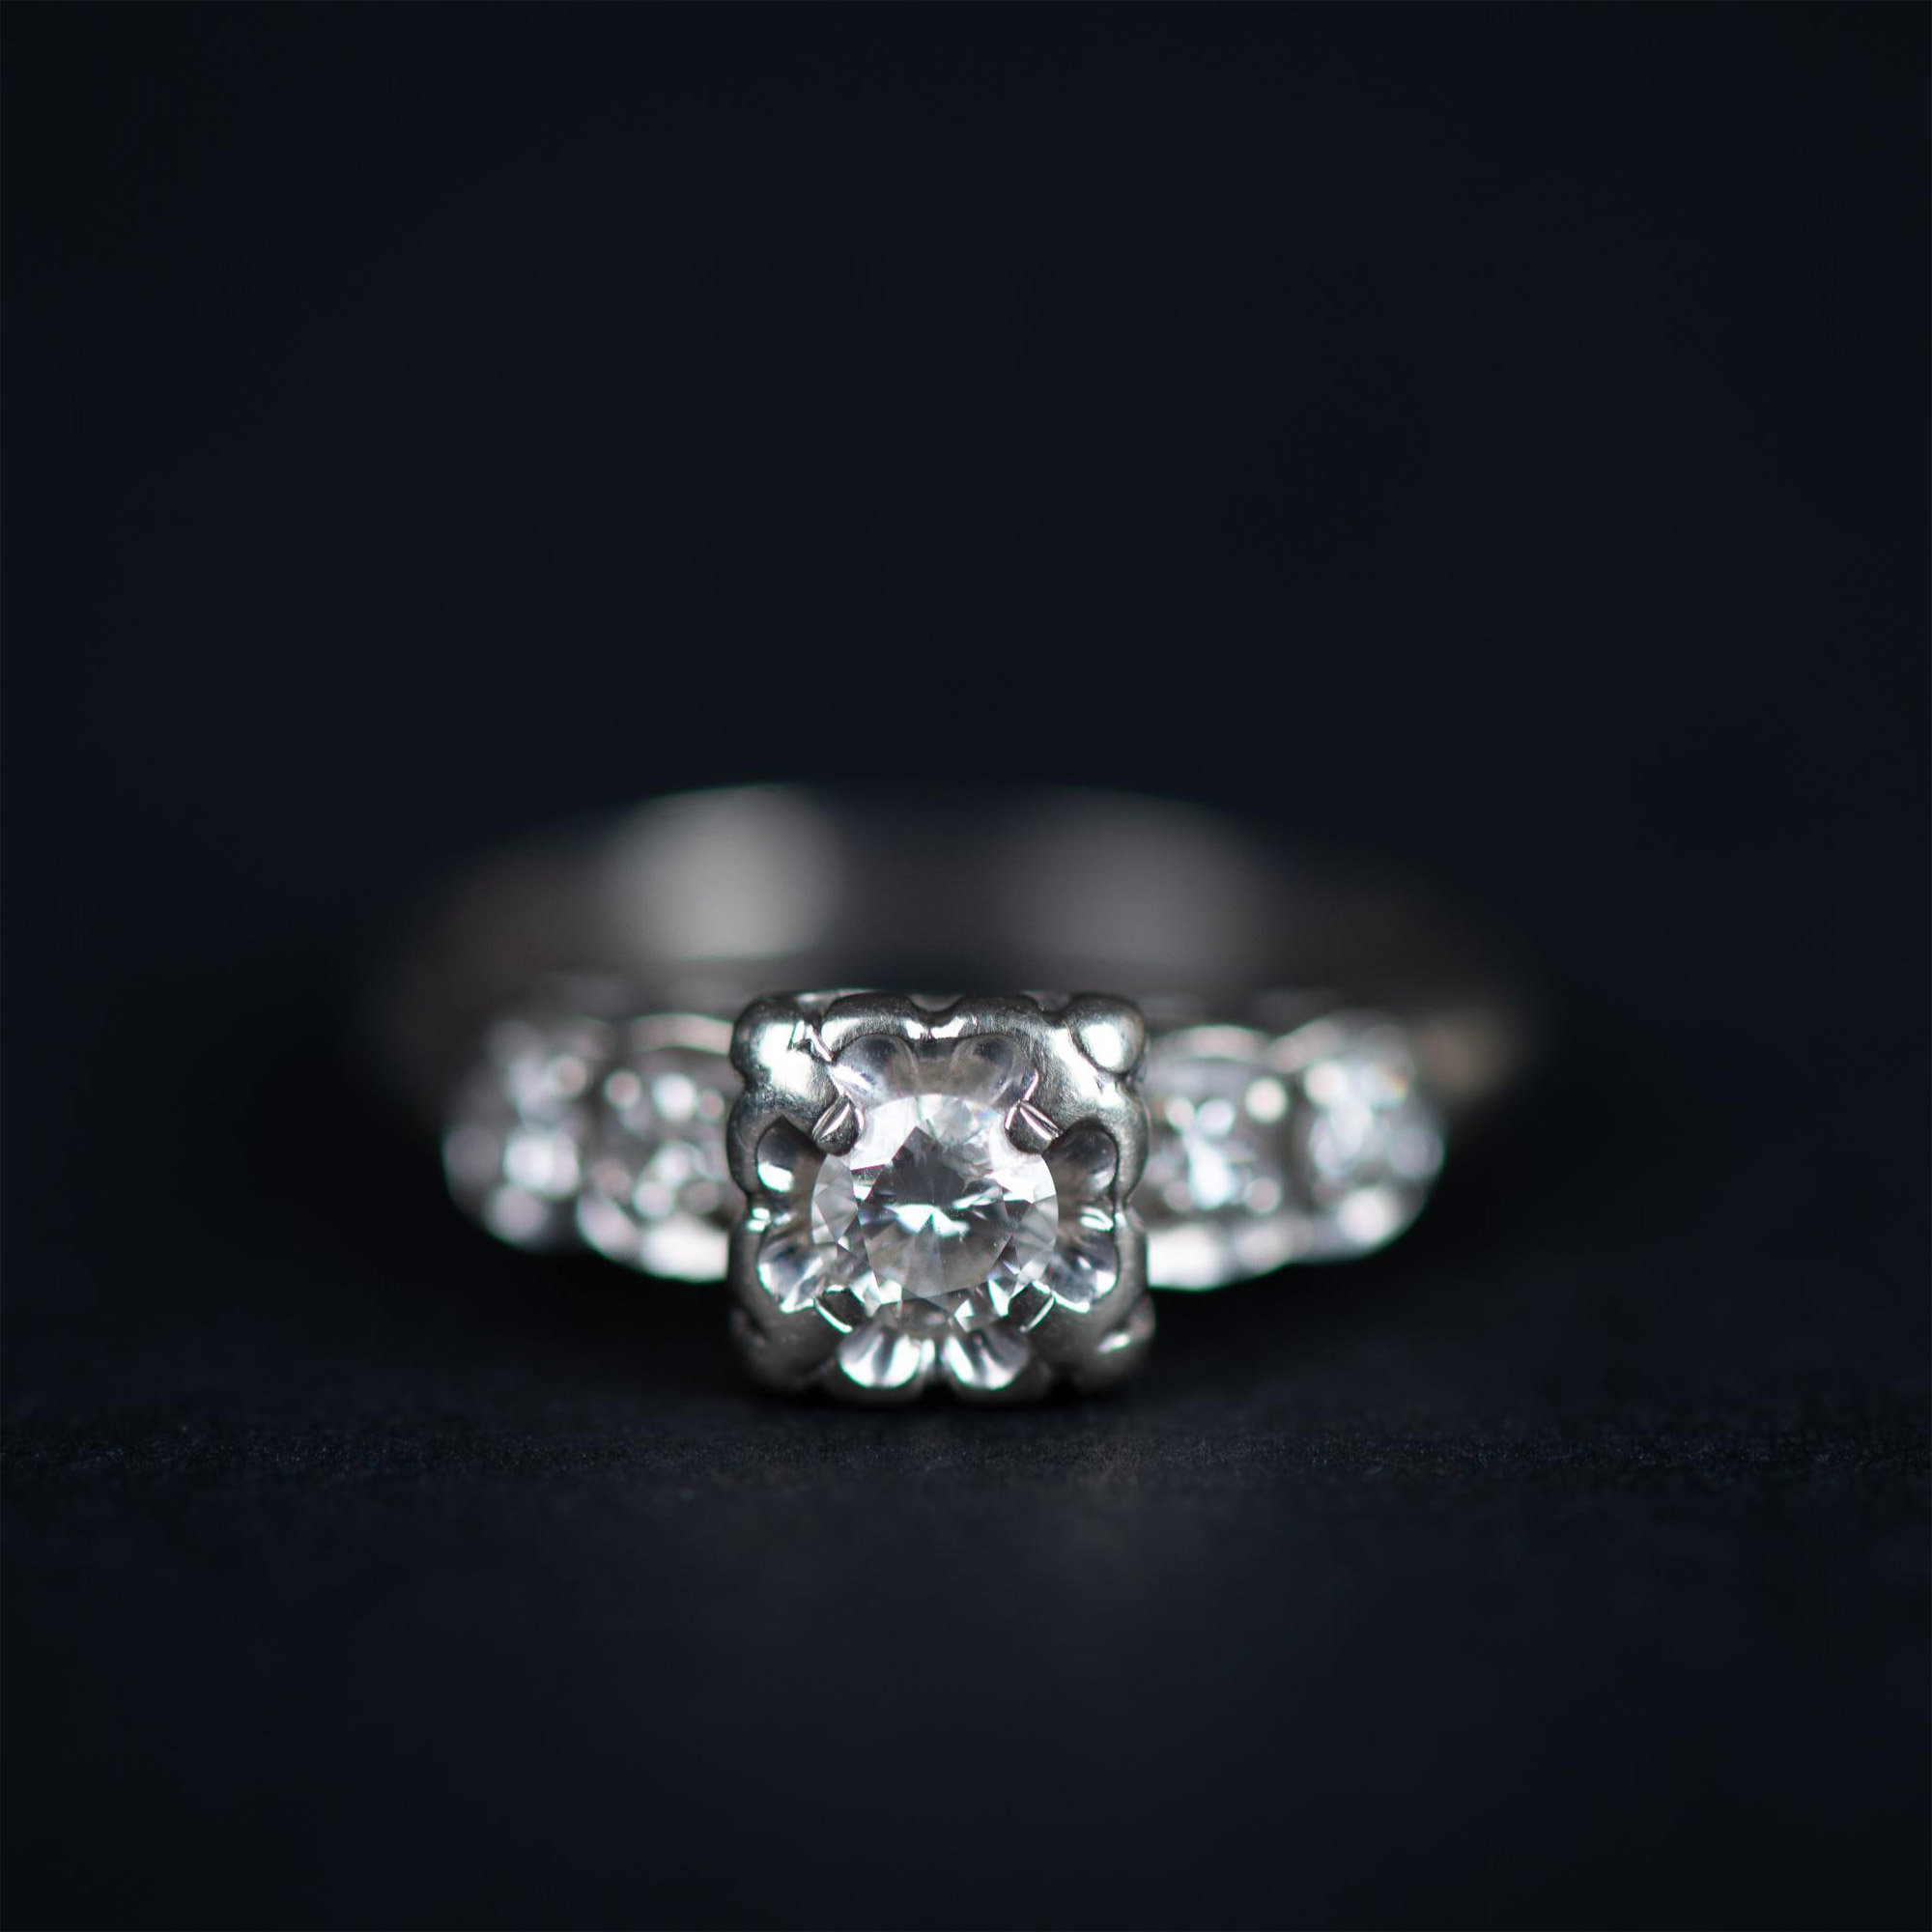 14K White Gold Diamond Engagement Ring & Wedding Band Set - Image 4 of 6